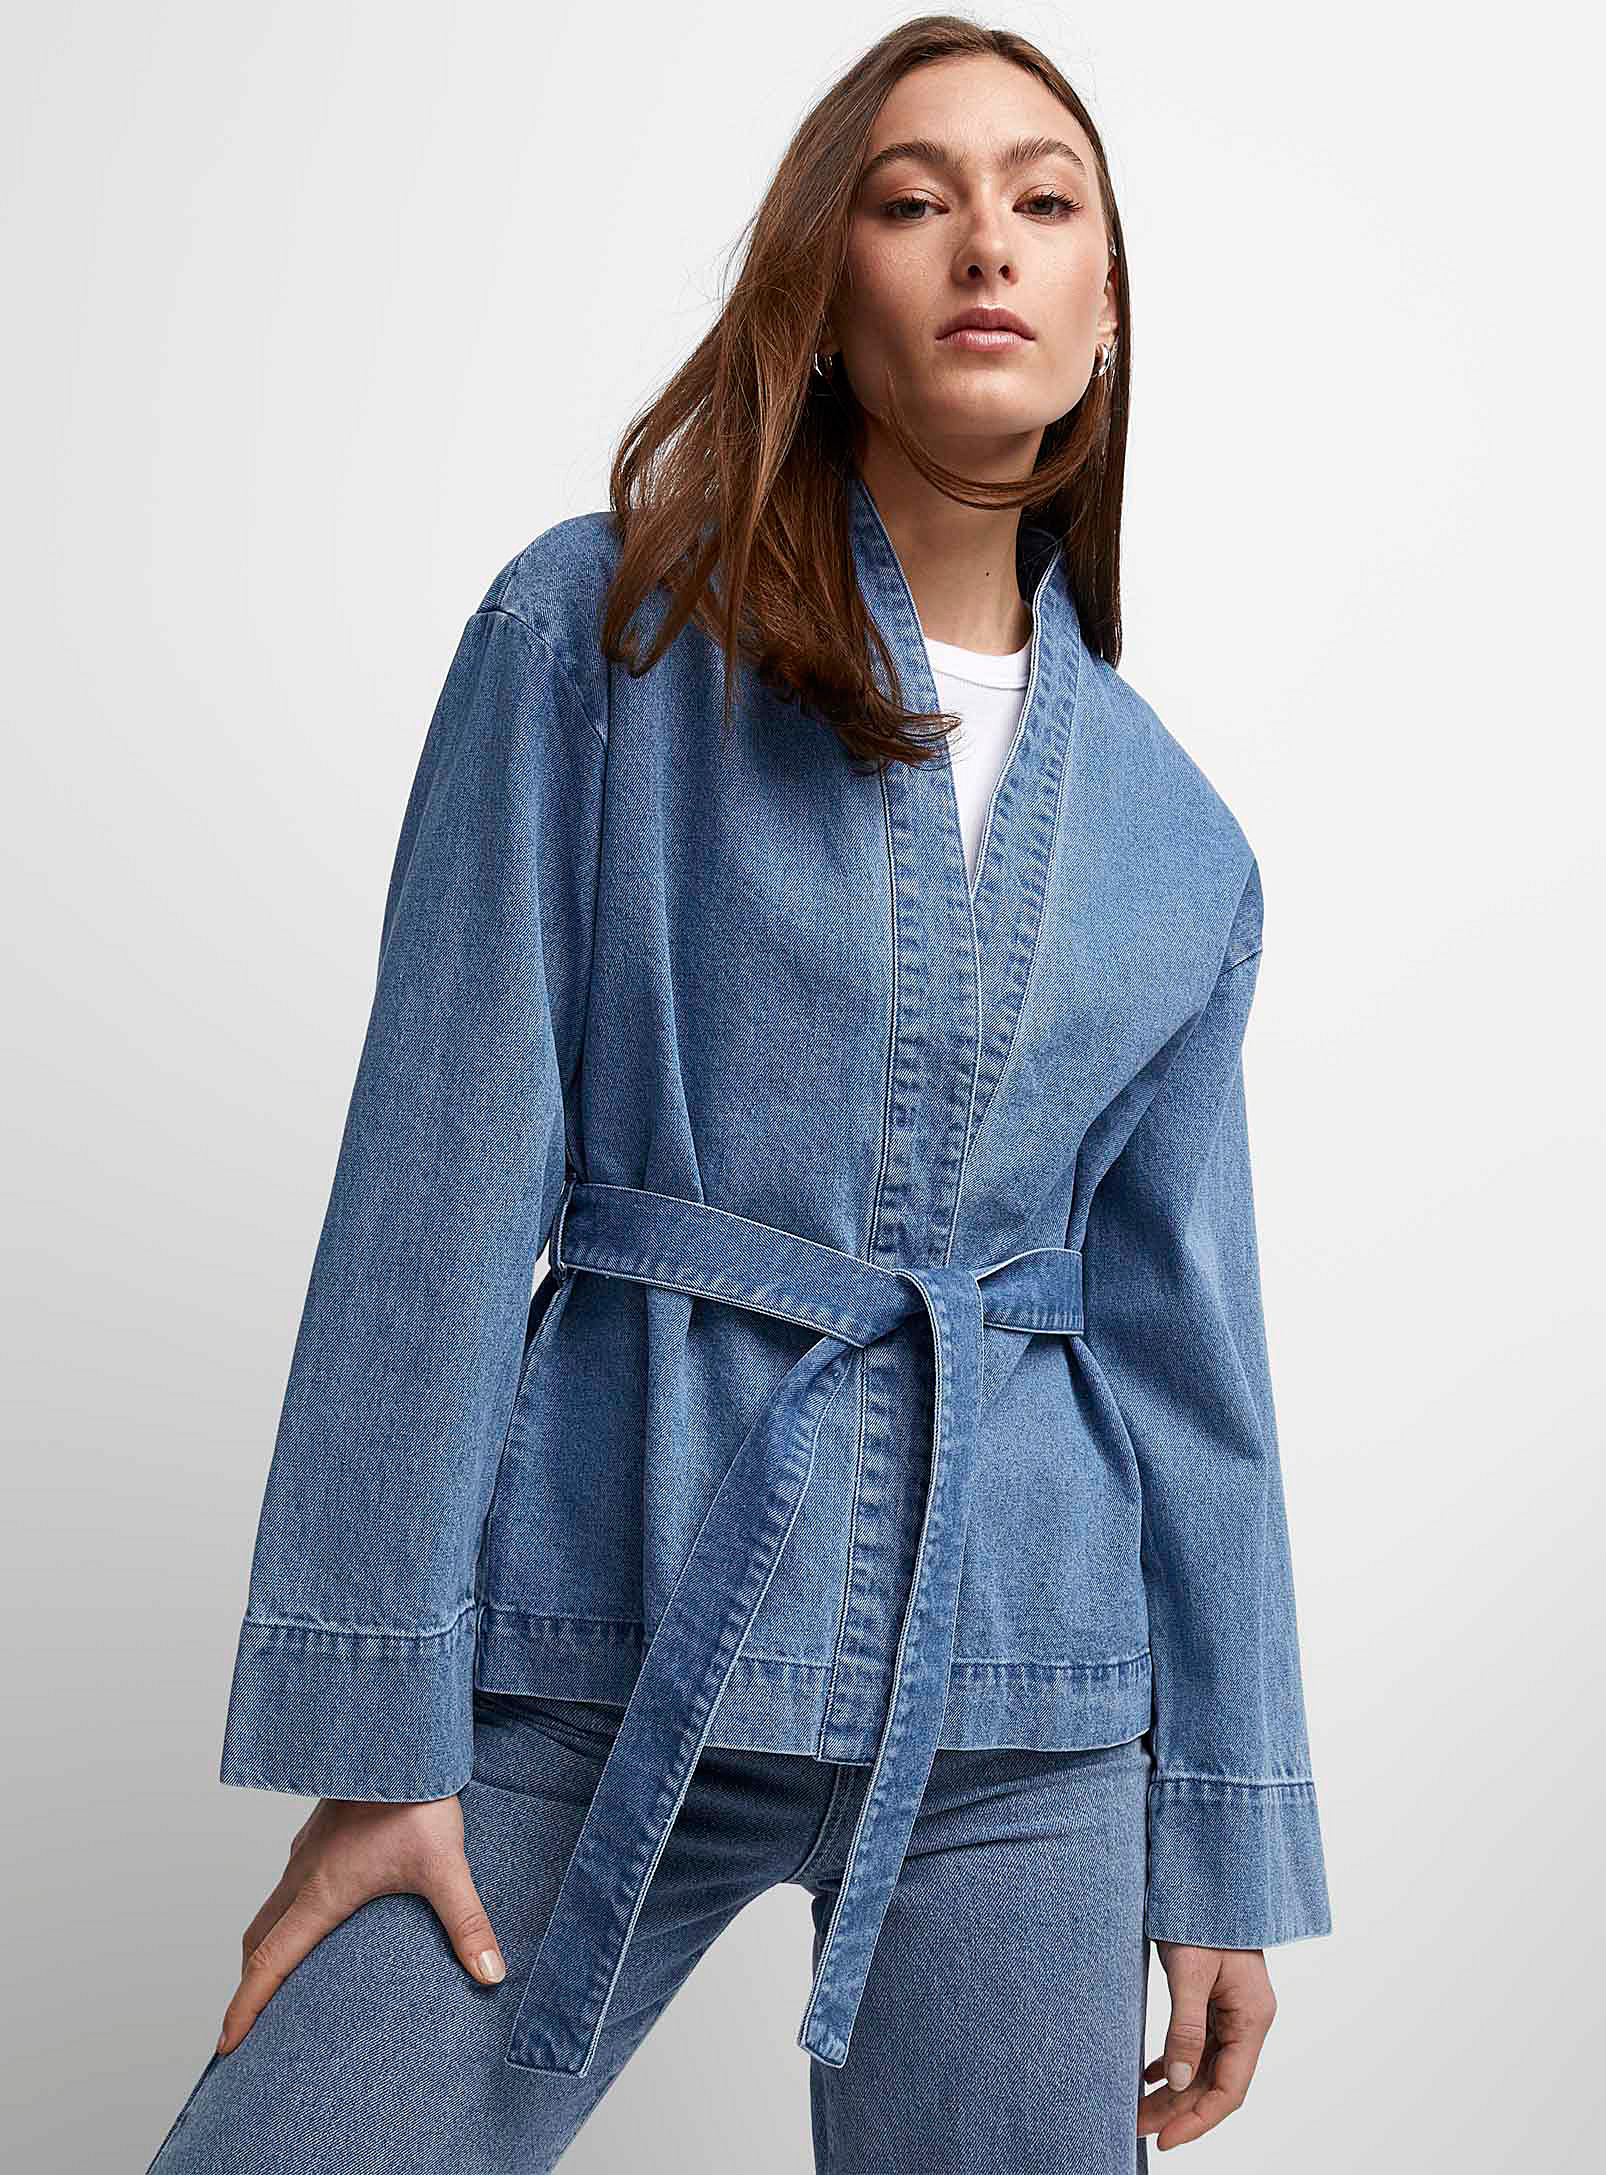 Vero Moda - Women's Medium indigo denim kimono jacket